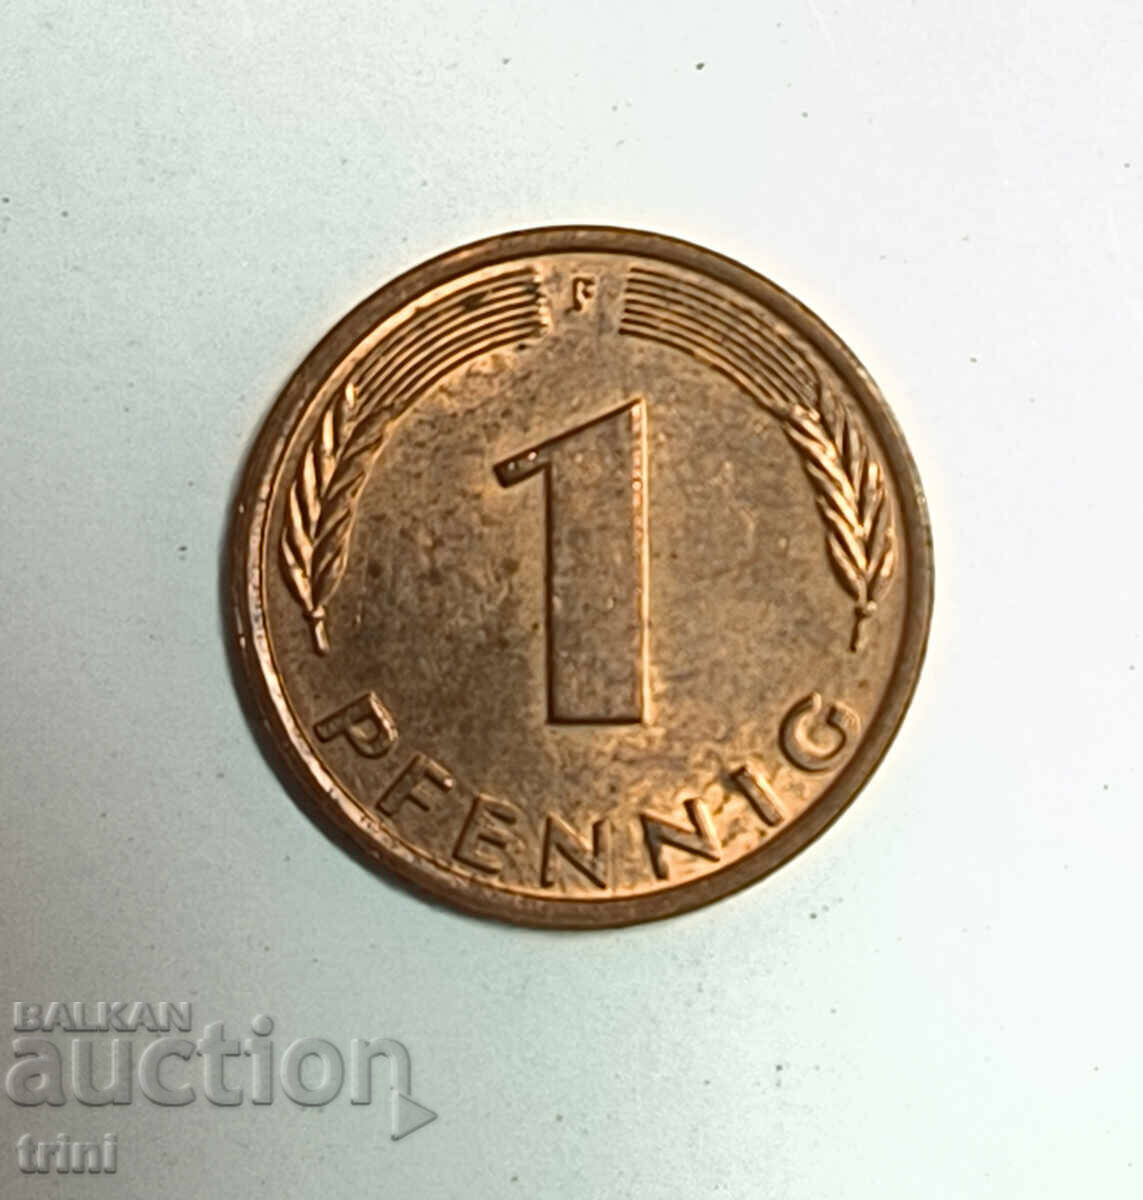 Γερμανία 1 pfennig 1977 έτος 'F' - Στουτγάρδη e179